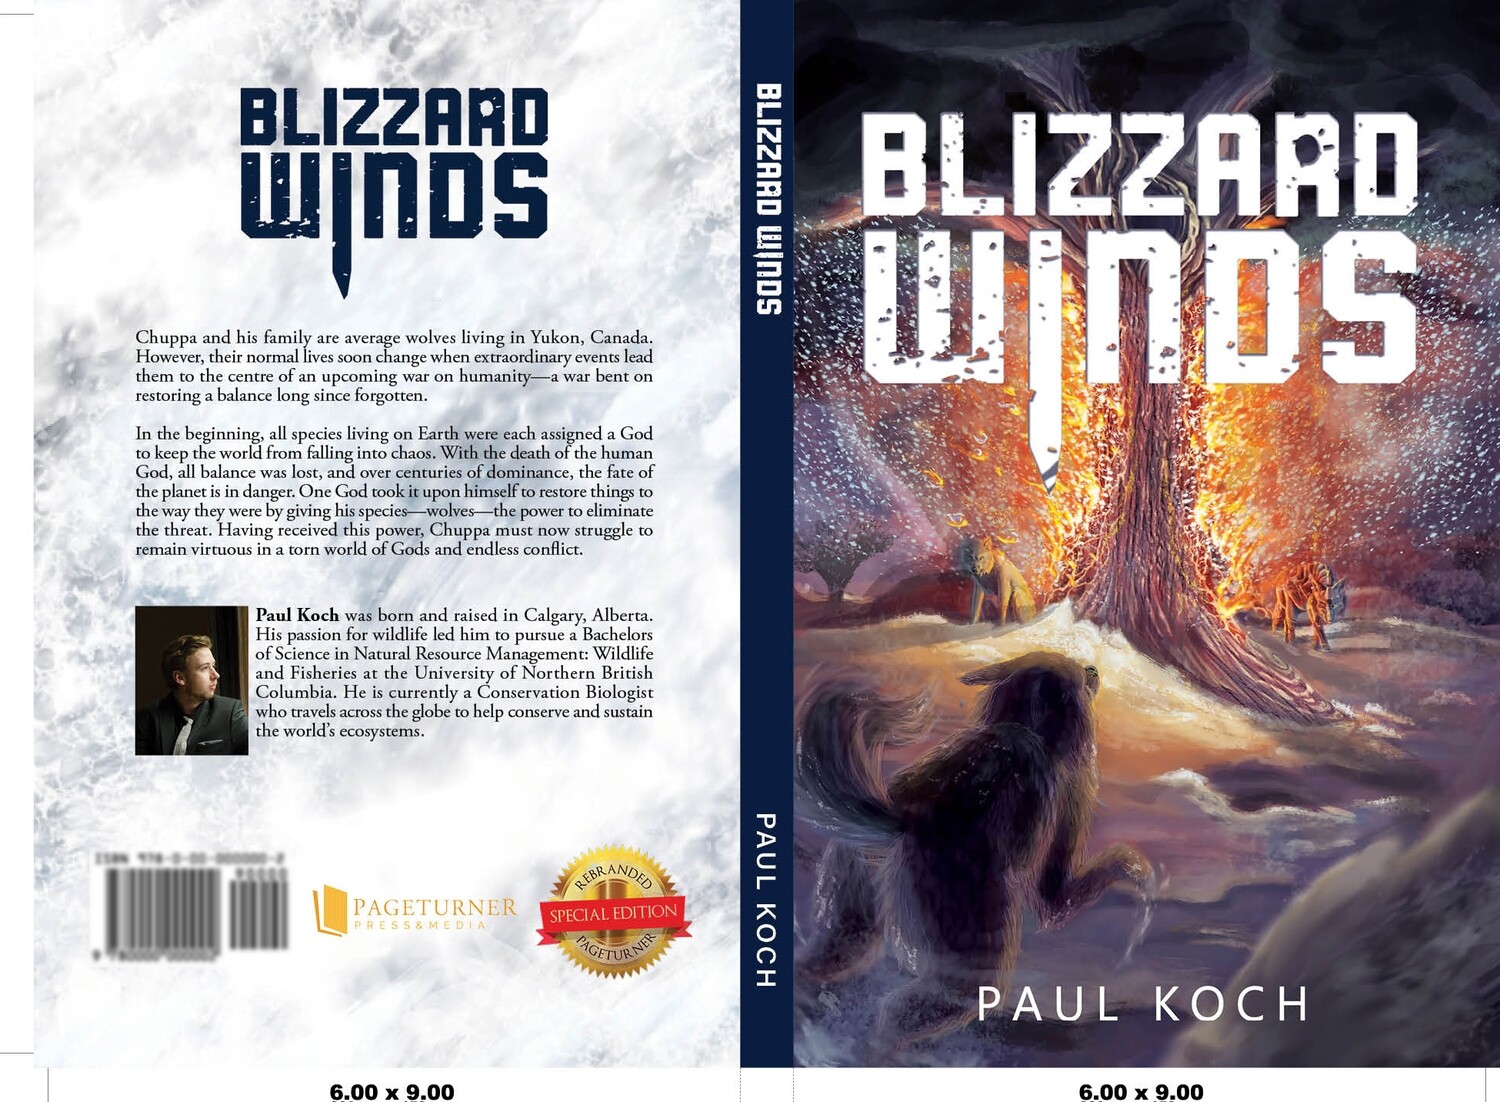 Blizzard Winds by Paul Koch